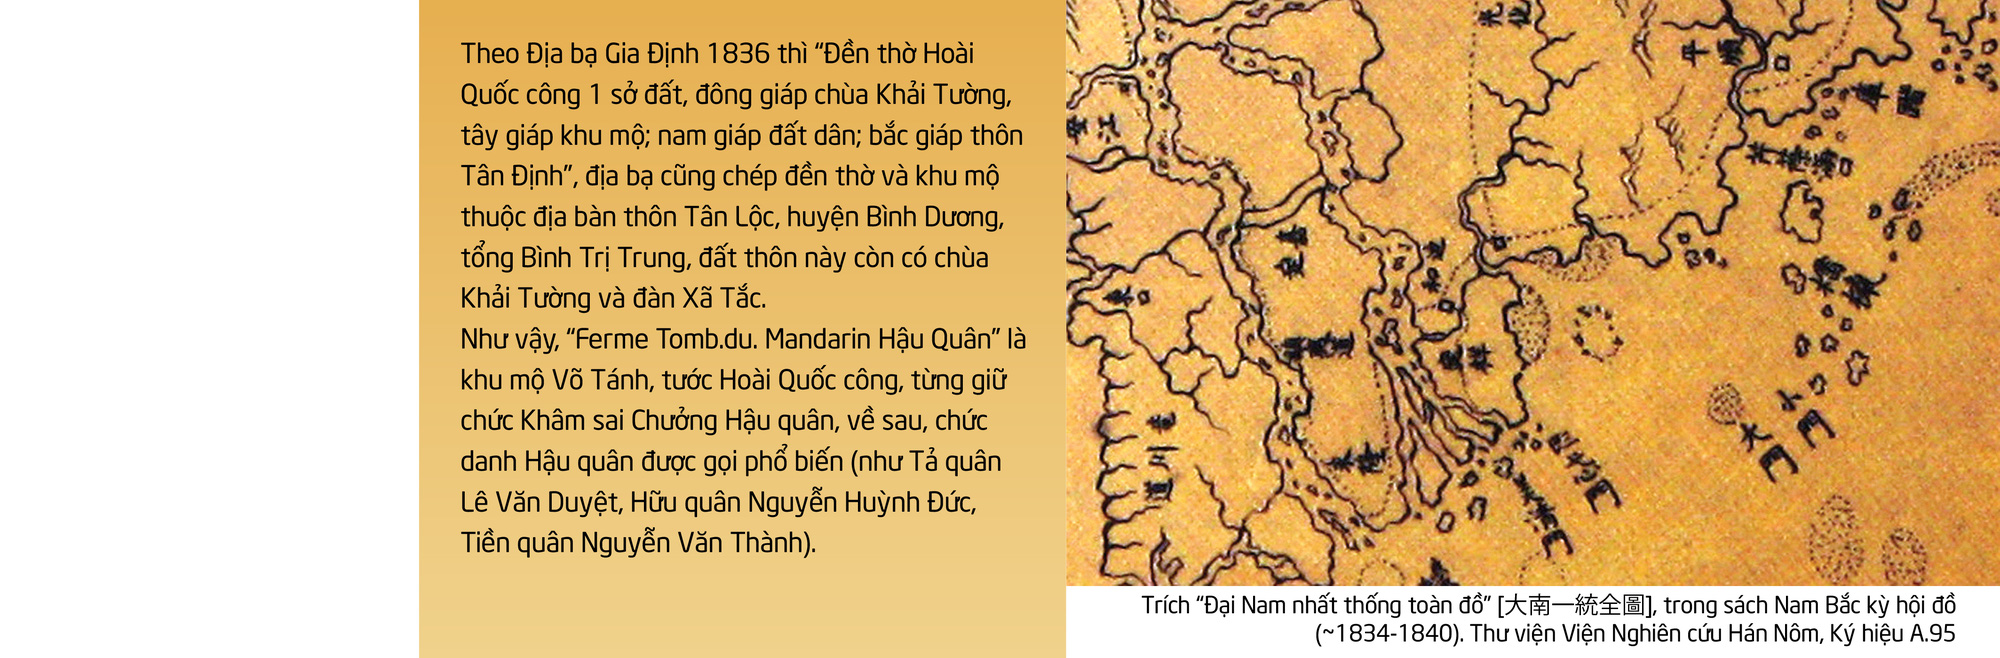 Sài Gòn: Bí ẩn địa danh trên bản đồ xưa - Ảnh 8.